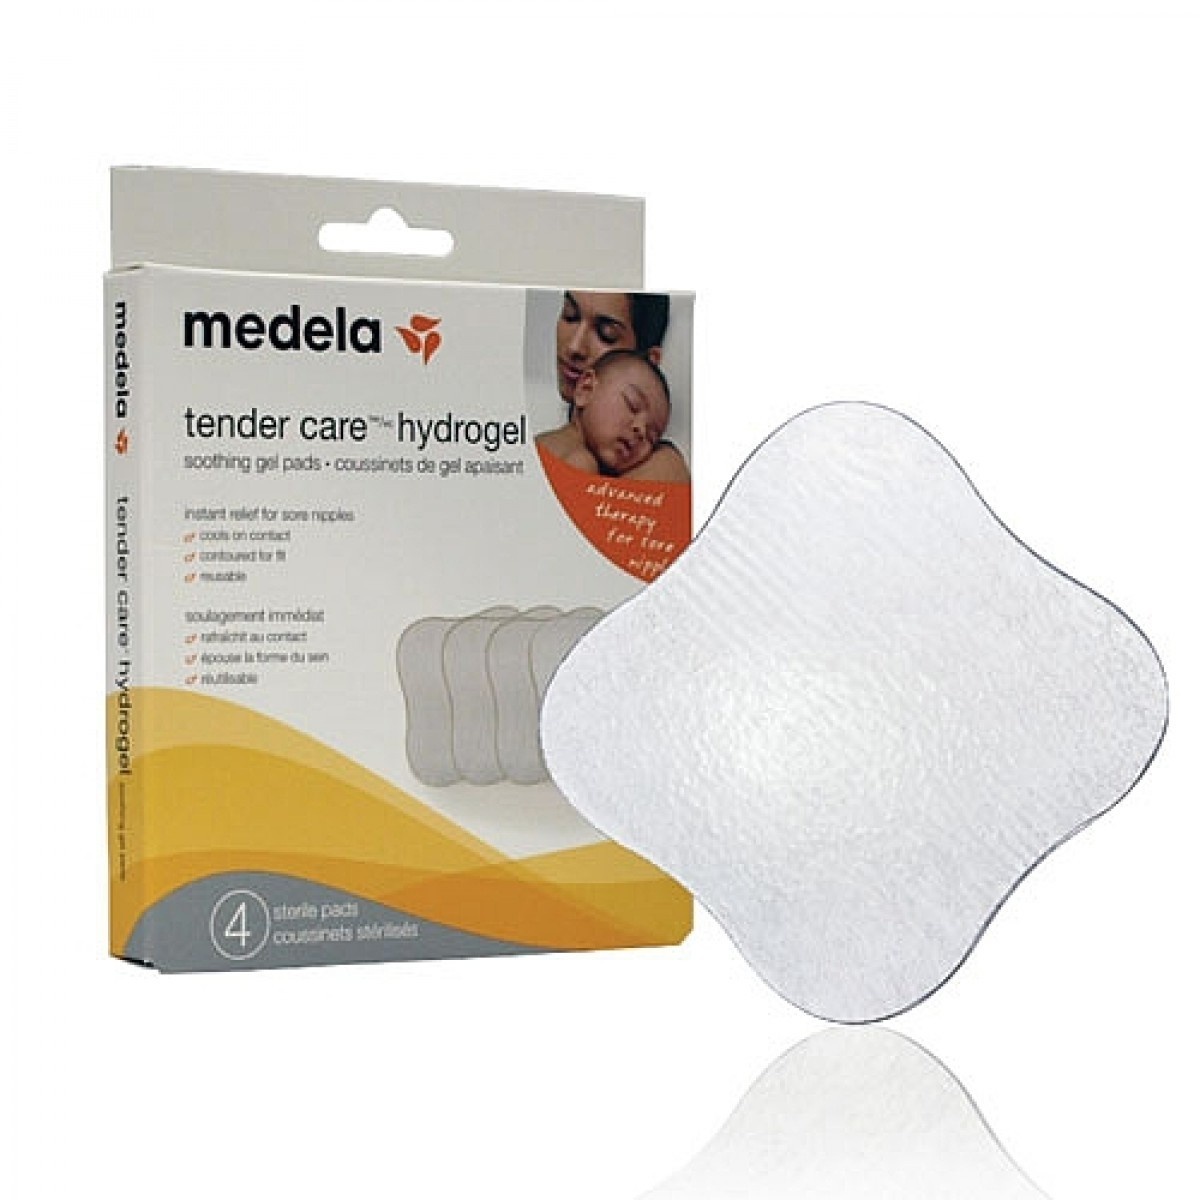 Medela Tender Care Hydrogel Pad -Buy Nursing Pad online in India